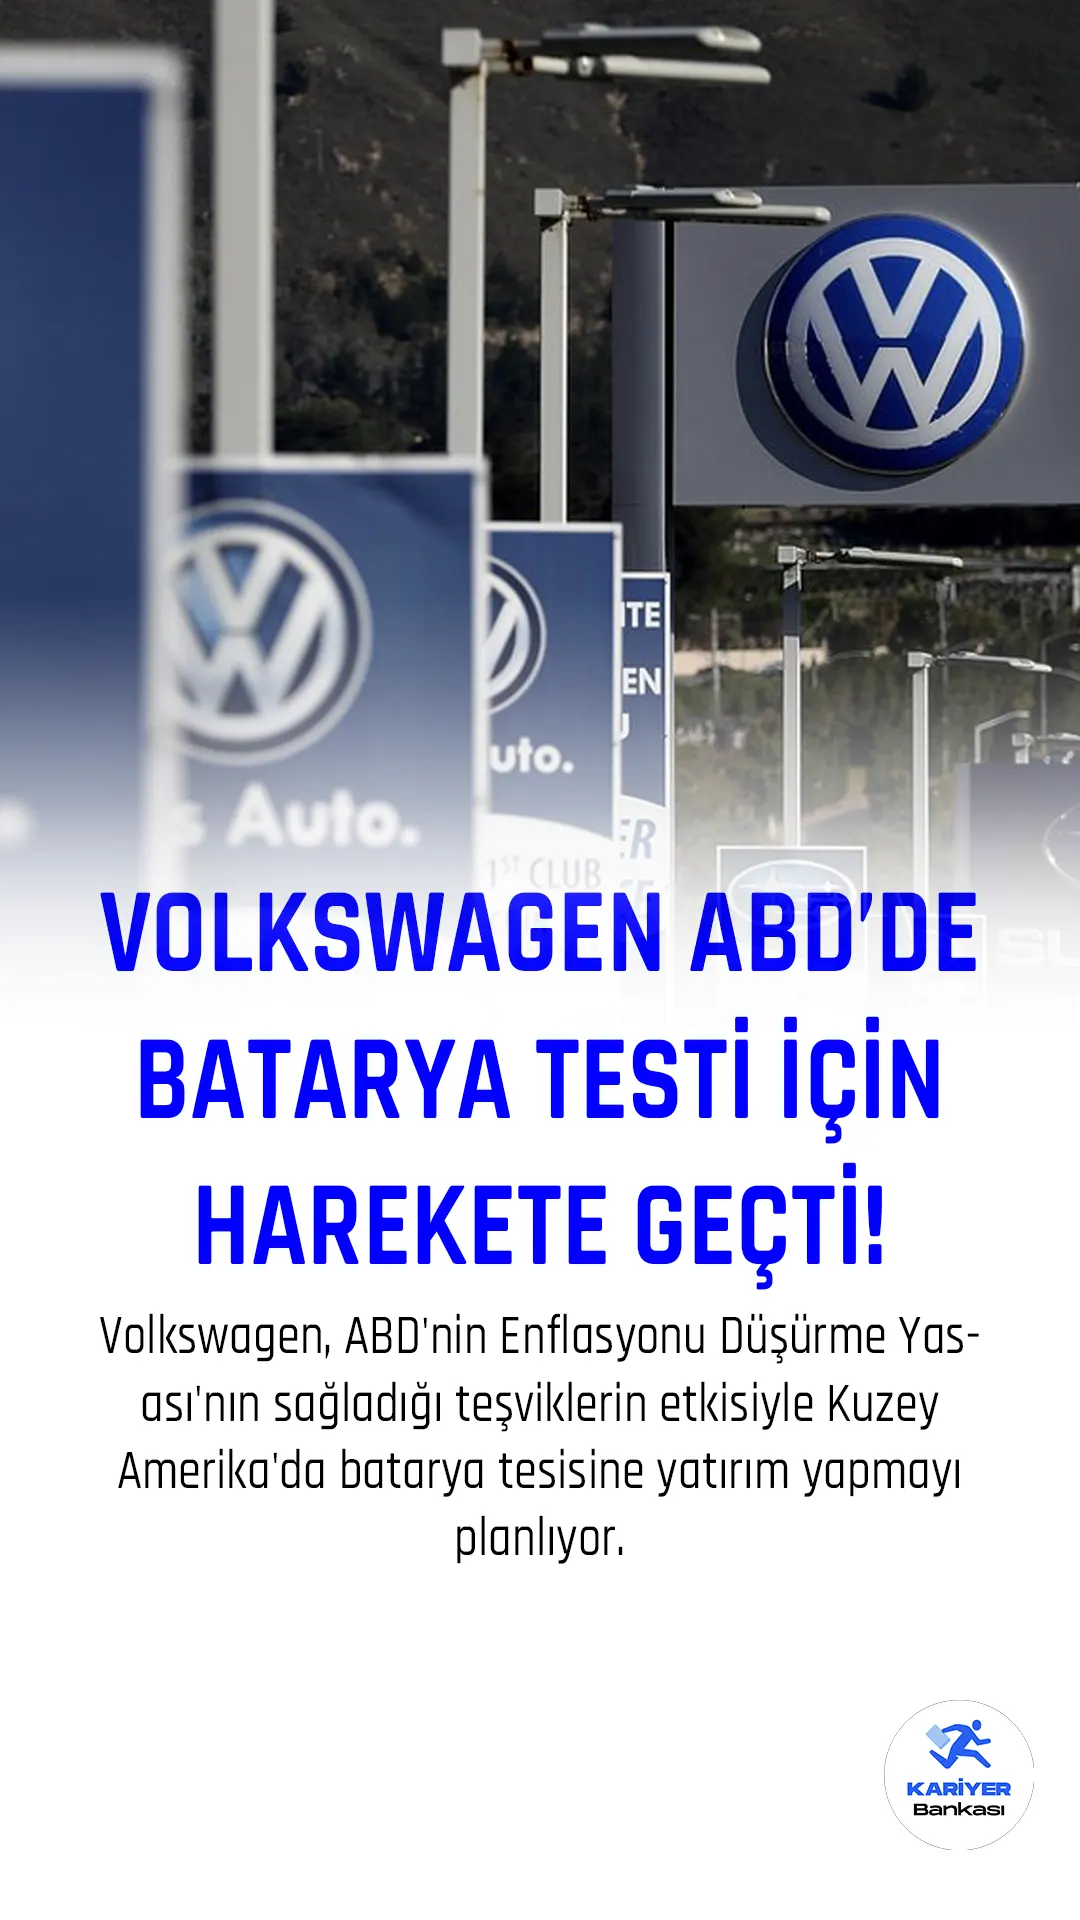 Volkswagen, ABD'nin Enflasyonu Düşürme Yasası'nın sağladığı teşviklerin etkisiyle Kuzey Amerika'da batarya tesisine yatırım yapmayı planlıyor.